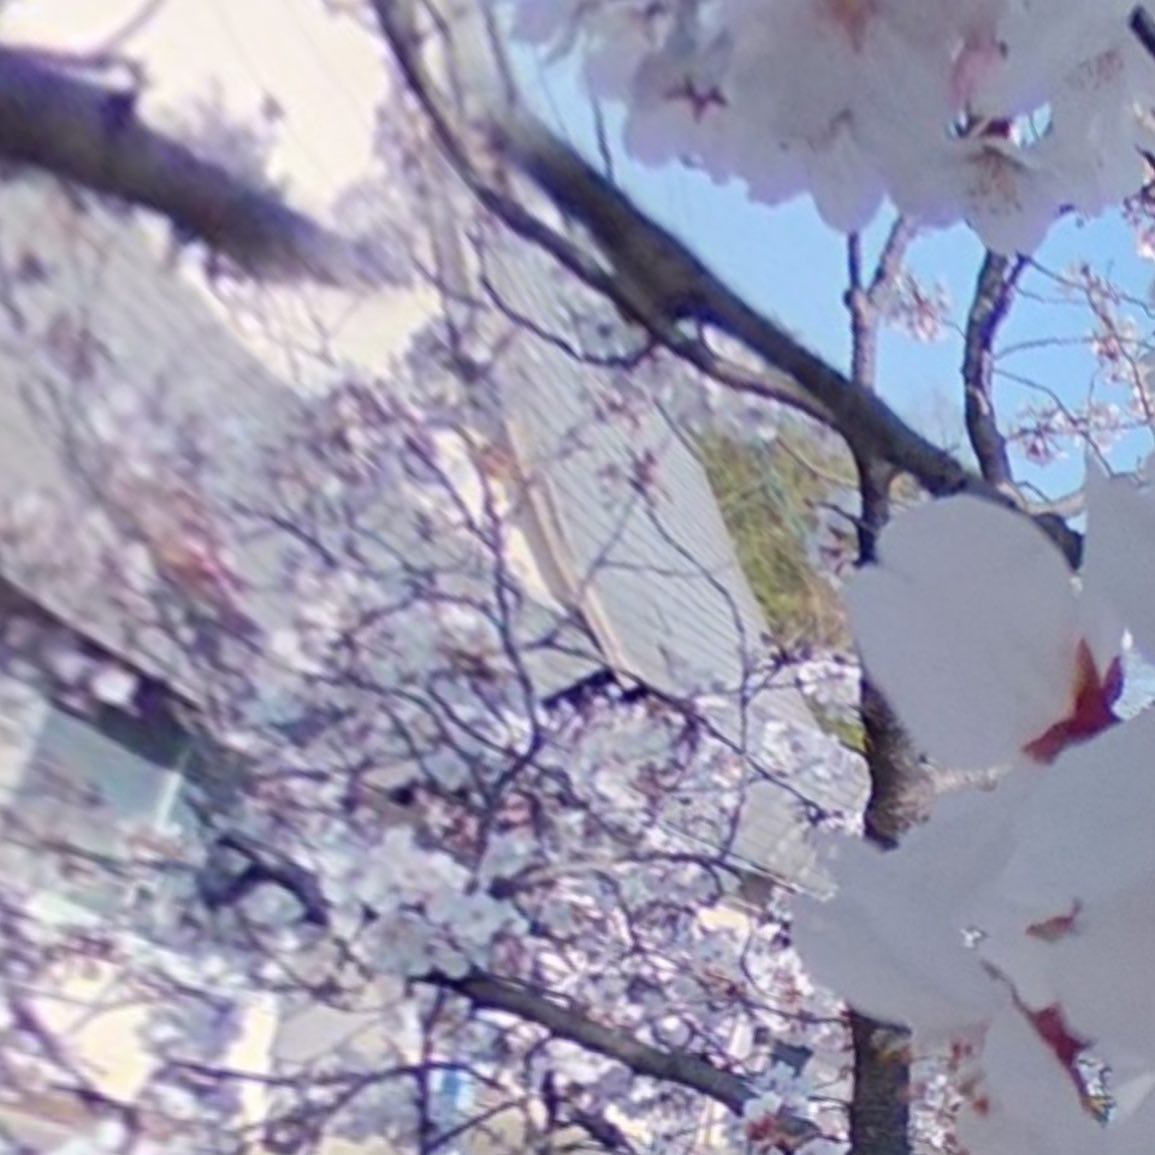 今日（2021/3/26）の桜。@東温市隻手薬師にて。全天球カメラで撮影した写真を切り出したパノラマ写真をさらに分割して複数枚写真にしたの図。右にフリックすれば連続で見えるはず、です。風も穏やかでいい天気です。明日も晴れるといいな。#さくら #桜 #サクラ #東温市 #隻手薬師 #青空 #theta #パノラマ